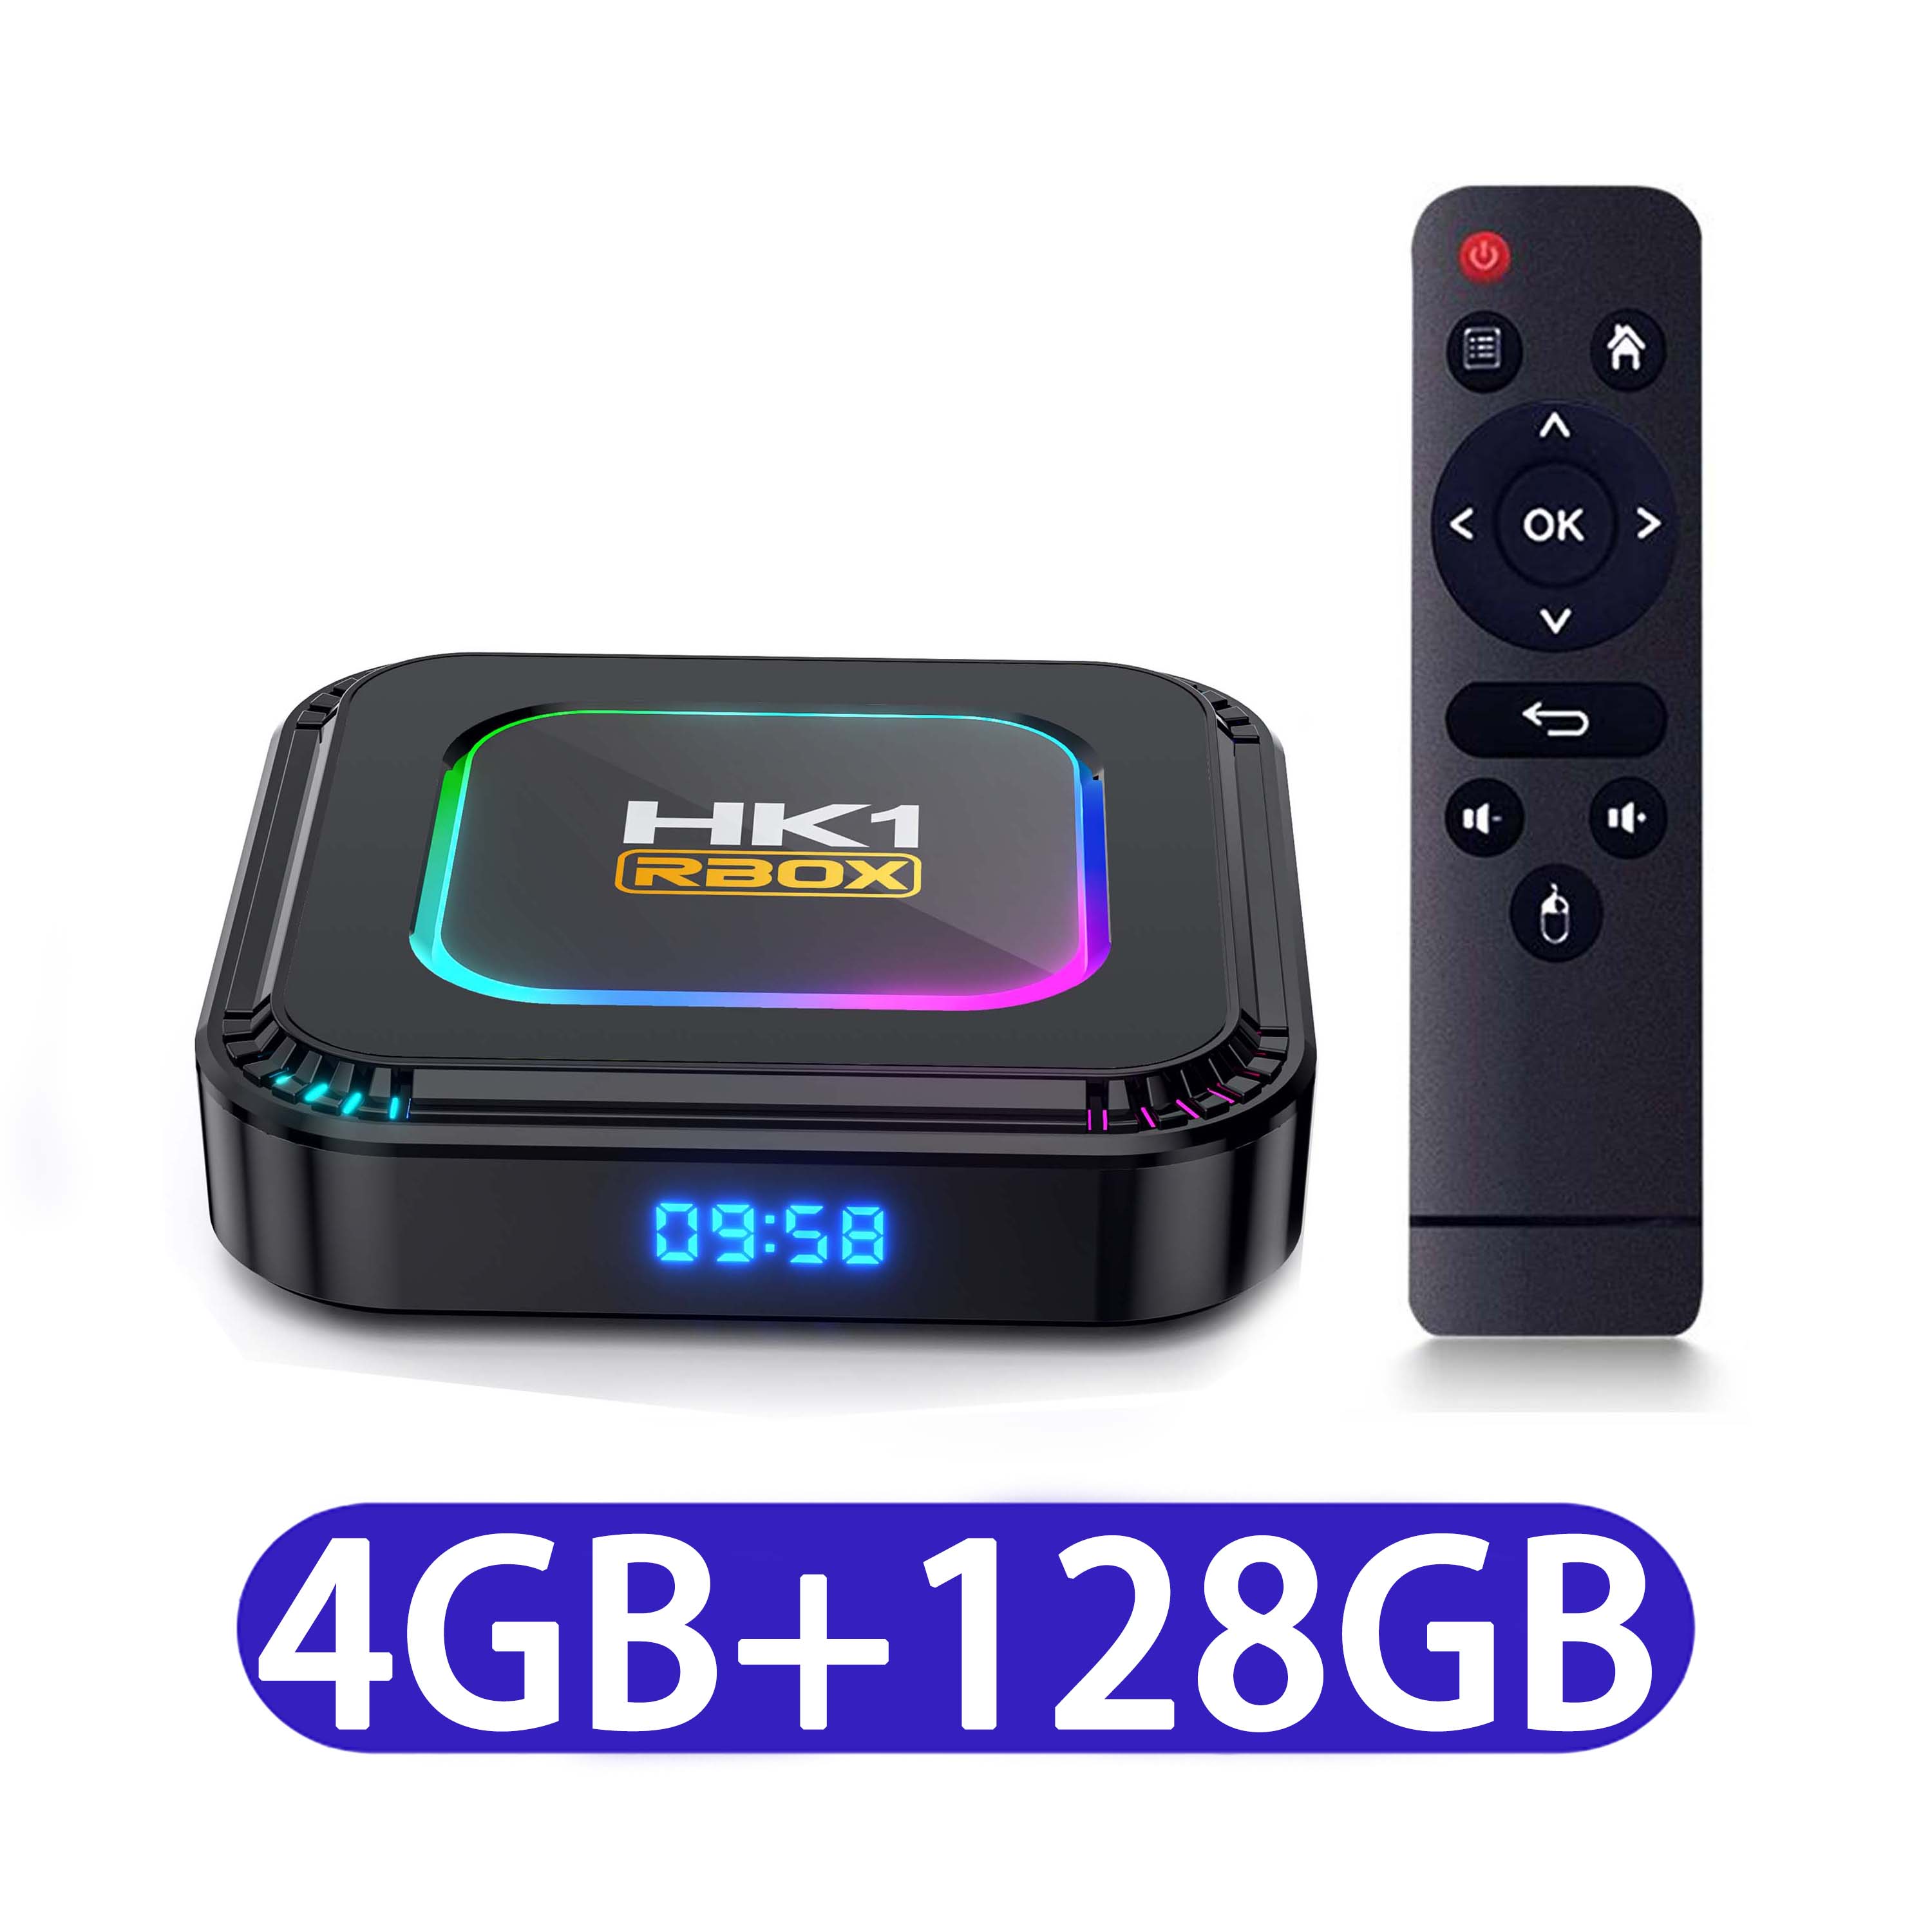 Tv Box Android13 RAM4GB +ROM 64GB Bluetooth 5.0 Smart TV Box 2.4G/5G WiFi Hỗ Trợ Giọng Nói Yutube NETFLIX bảo hành 1 năm HK1 rbbox-k8 rk3528